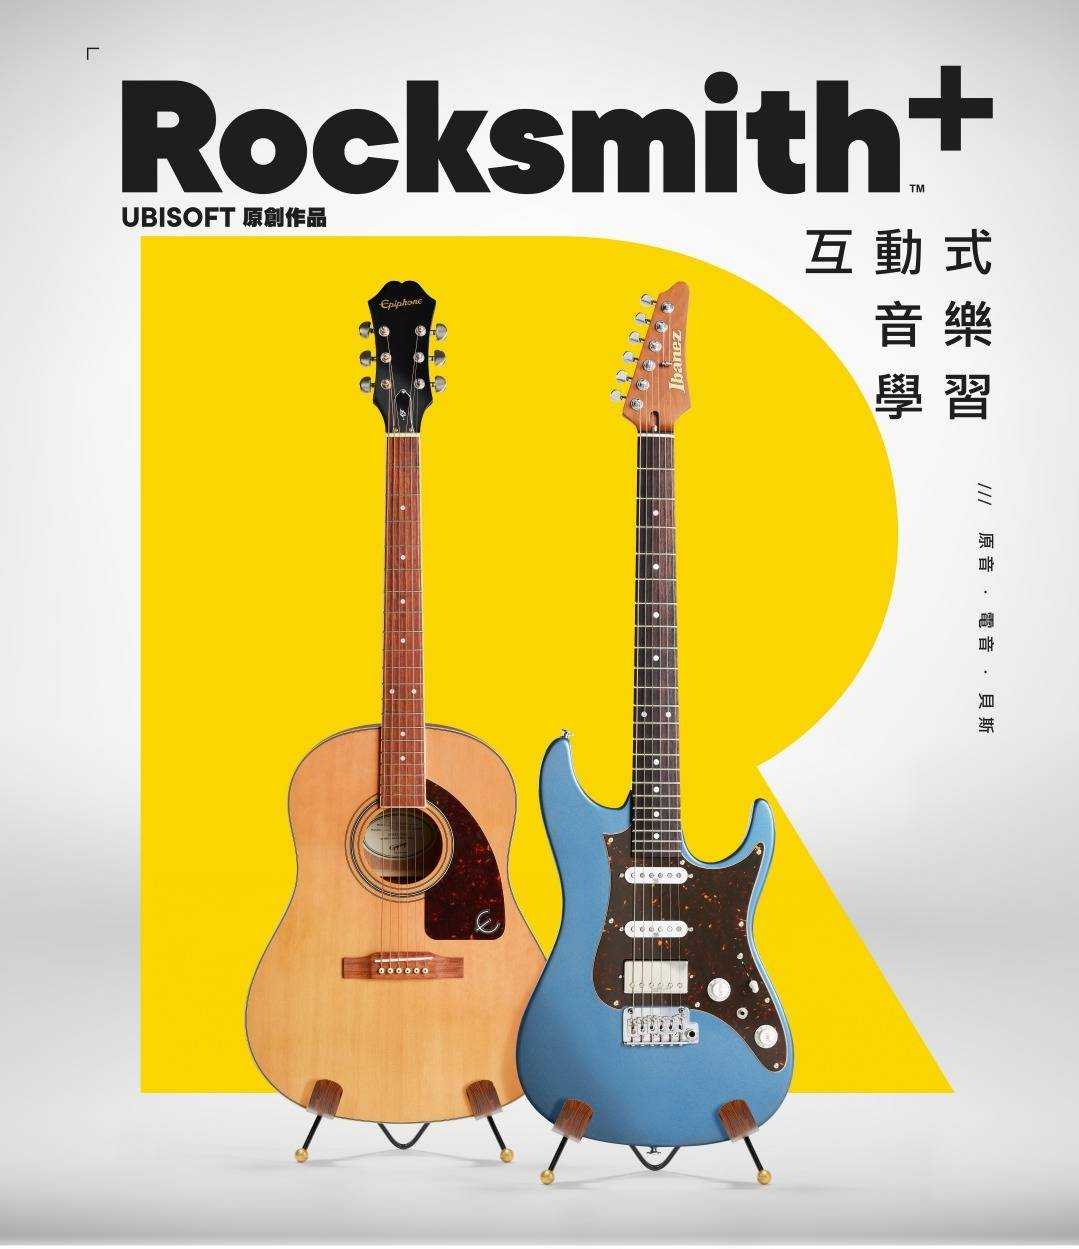 育碧正在将Rocksmith+拓展至吉他以外的领域-咸鱼单机官网